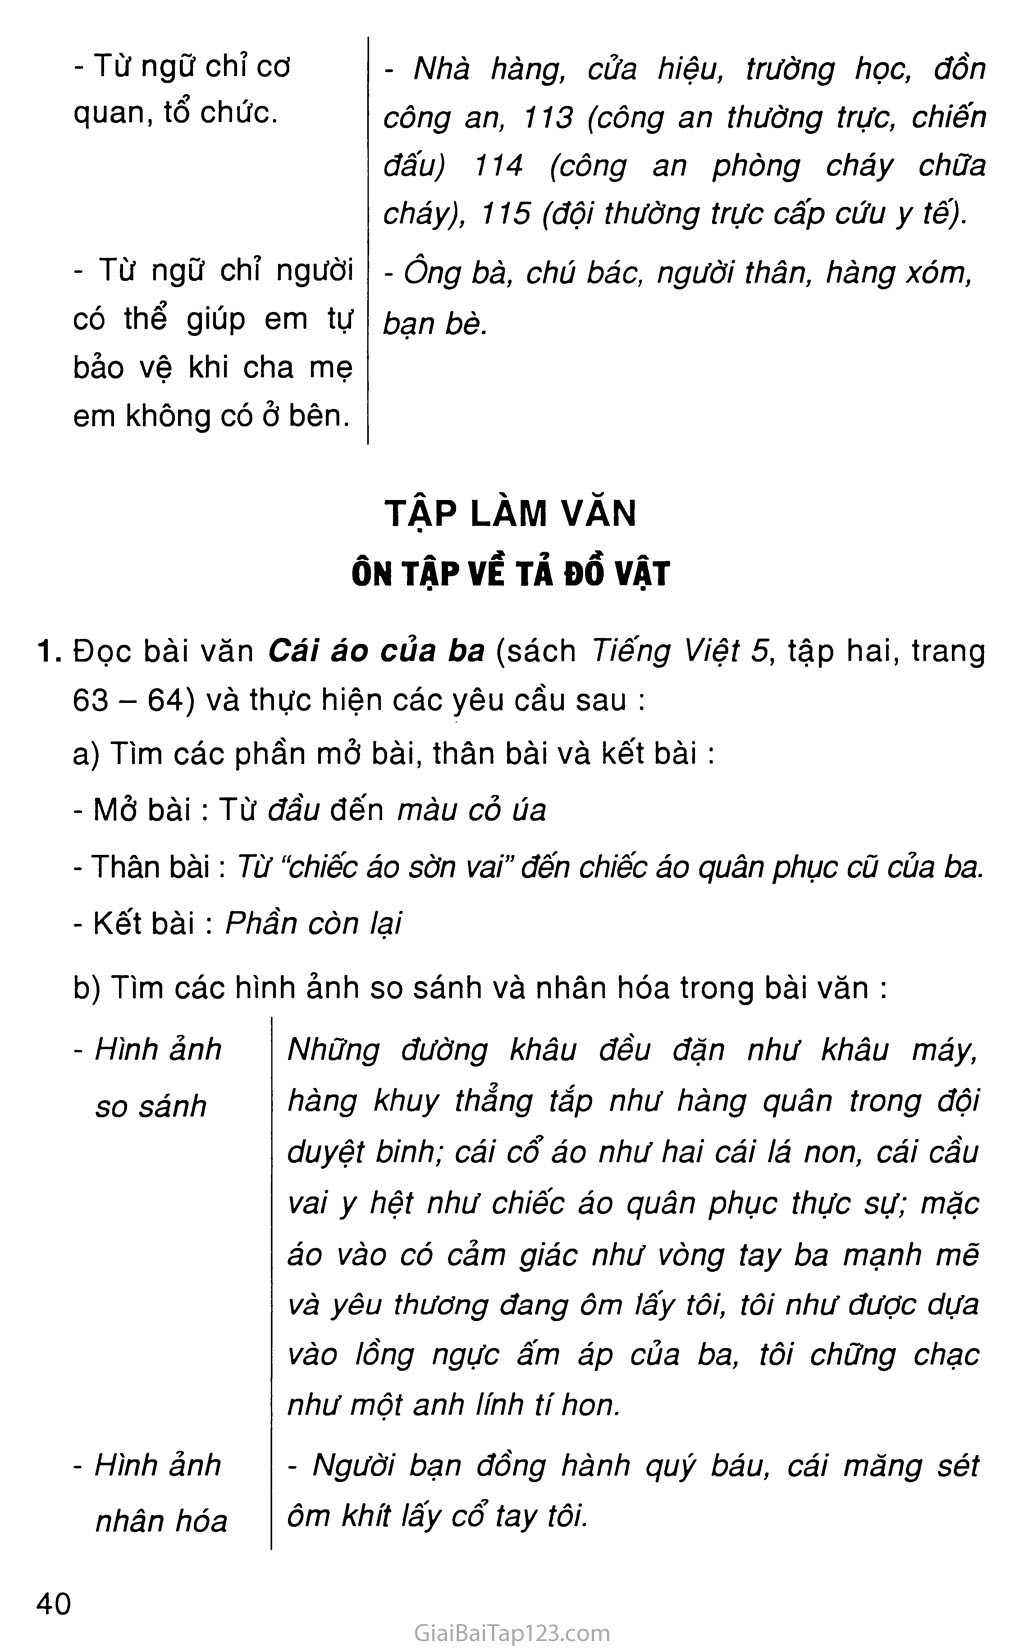 Bài tập Tiếng Việt lớp 5 trong hình ảnh này là một thử thách thú vị, giúp học sinh rèn luyện kỹ năng đọc, viết và nói. Từ các câu hỏi đơn giản đến những đoạn văn dài hơn, bài tập này thực sự là một cách hiệu quả để học sinh tiến bộ.